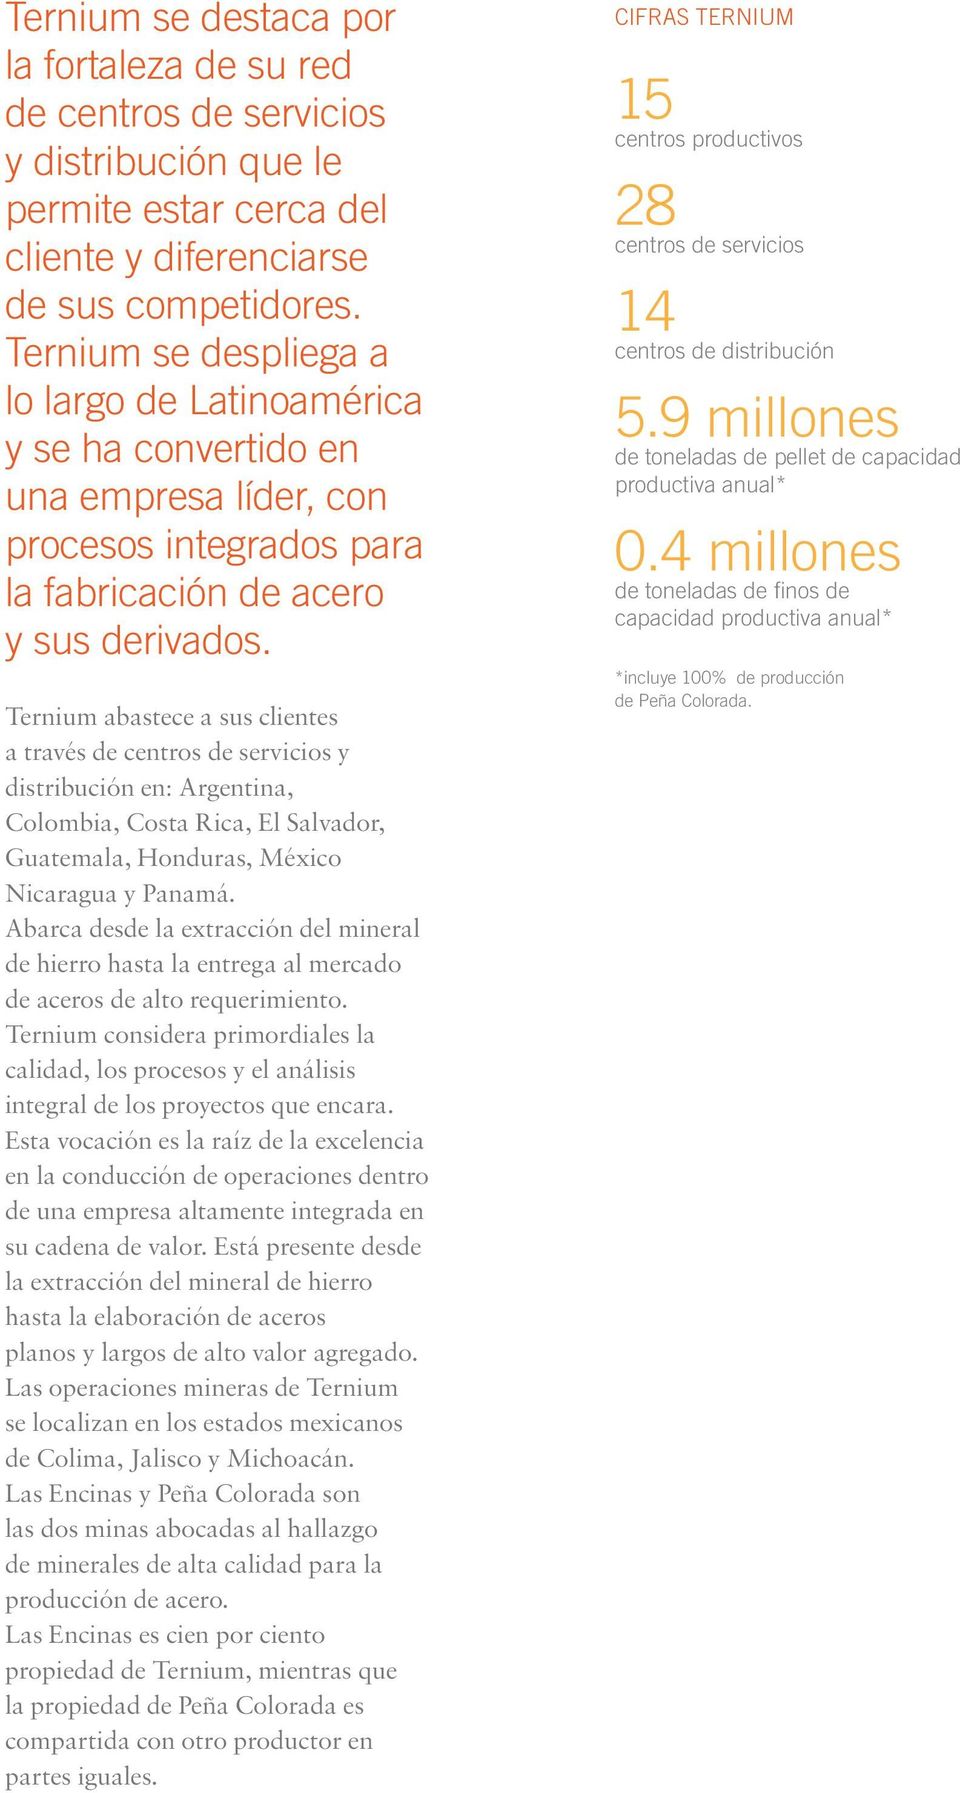 Ternium abastece a sus clientes a través de centros de servicios y distribución en: Argentina, Colombia, Costa Rica, El Salvador, Guatemala, Honduras, México Nicaragua y Panamá.